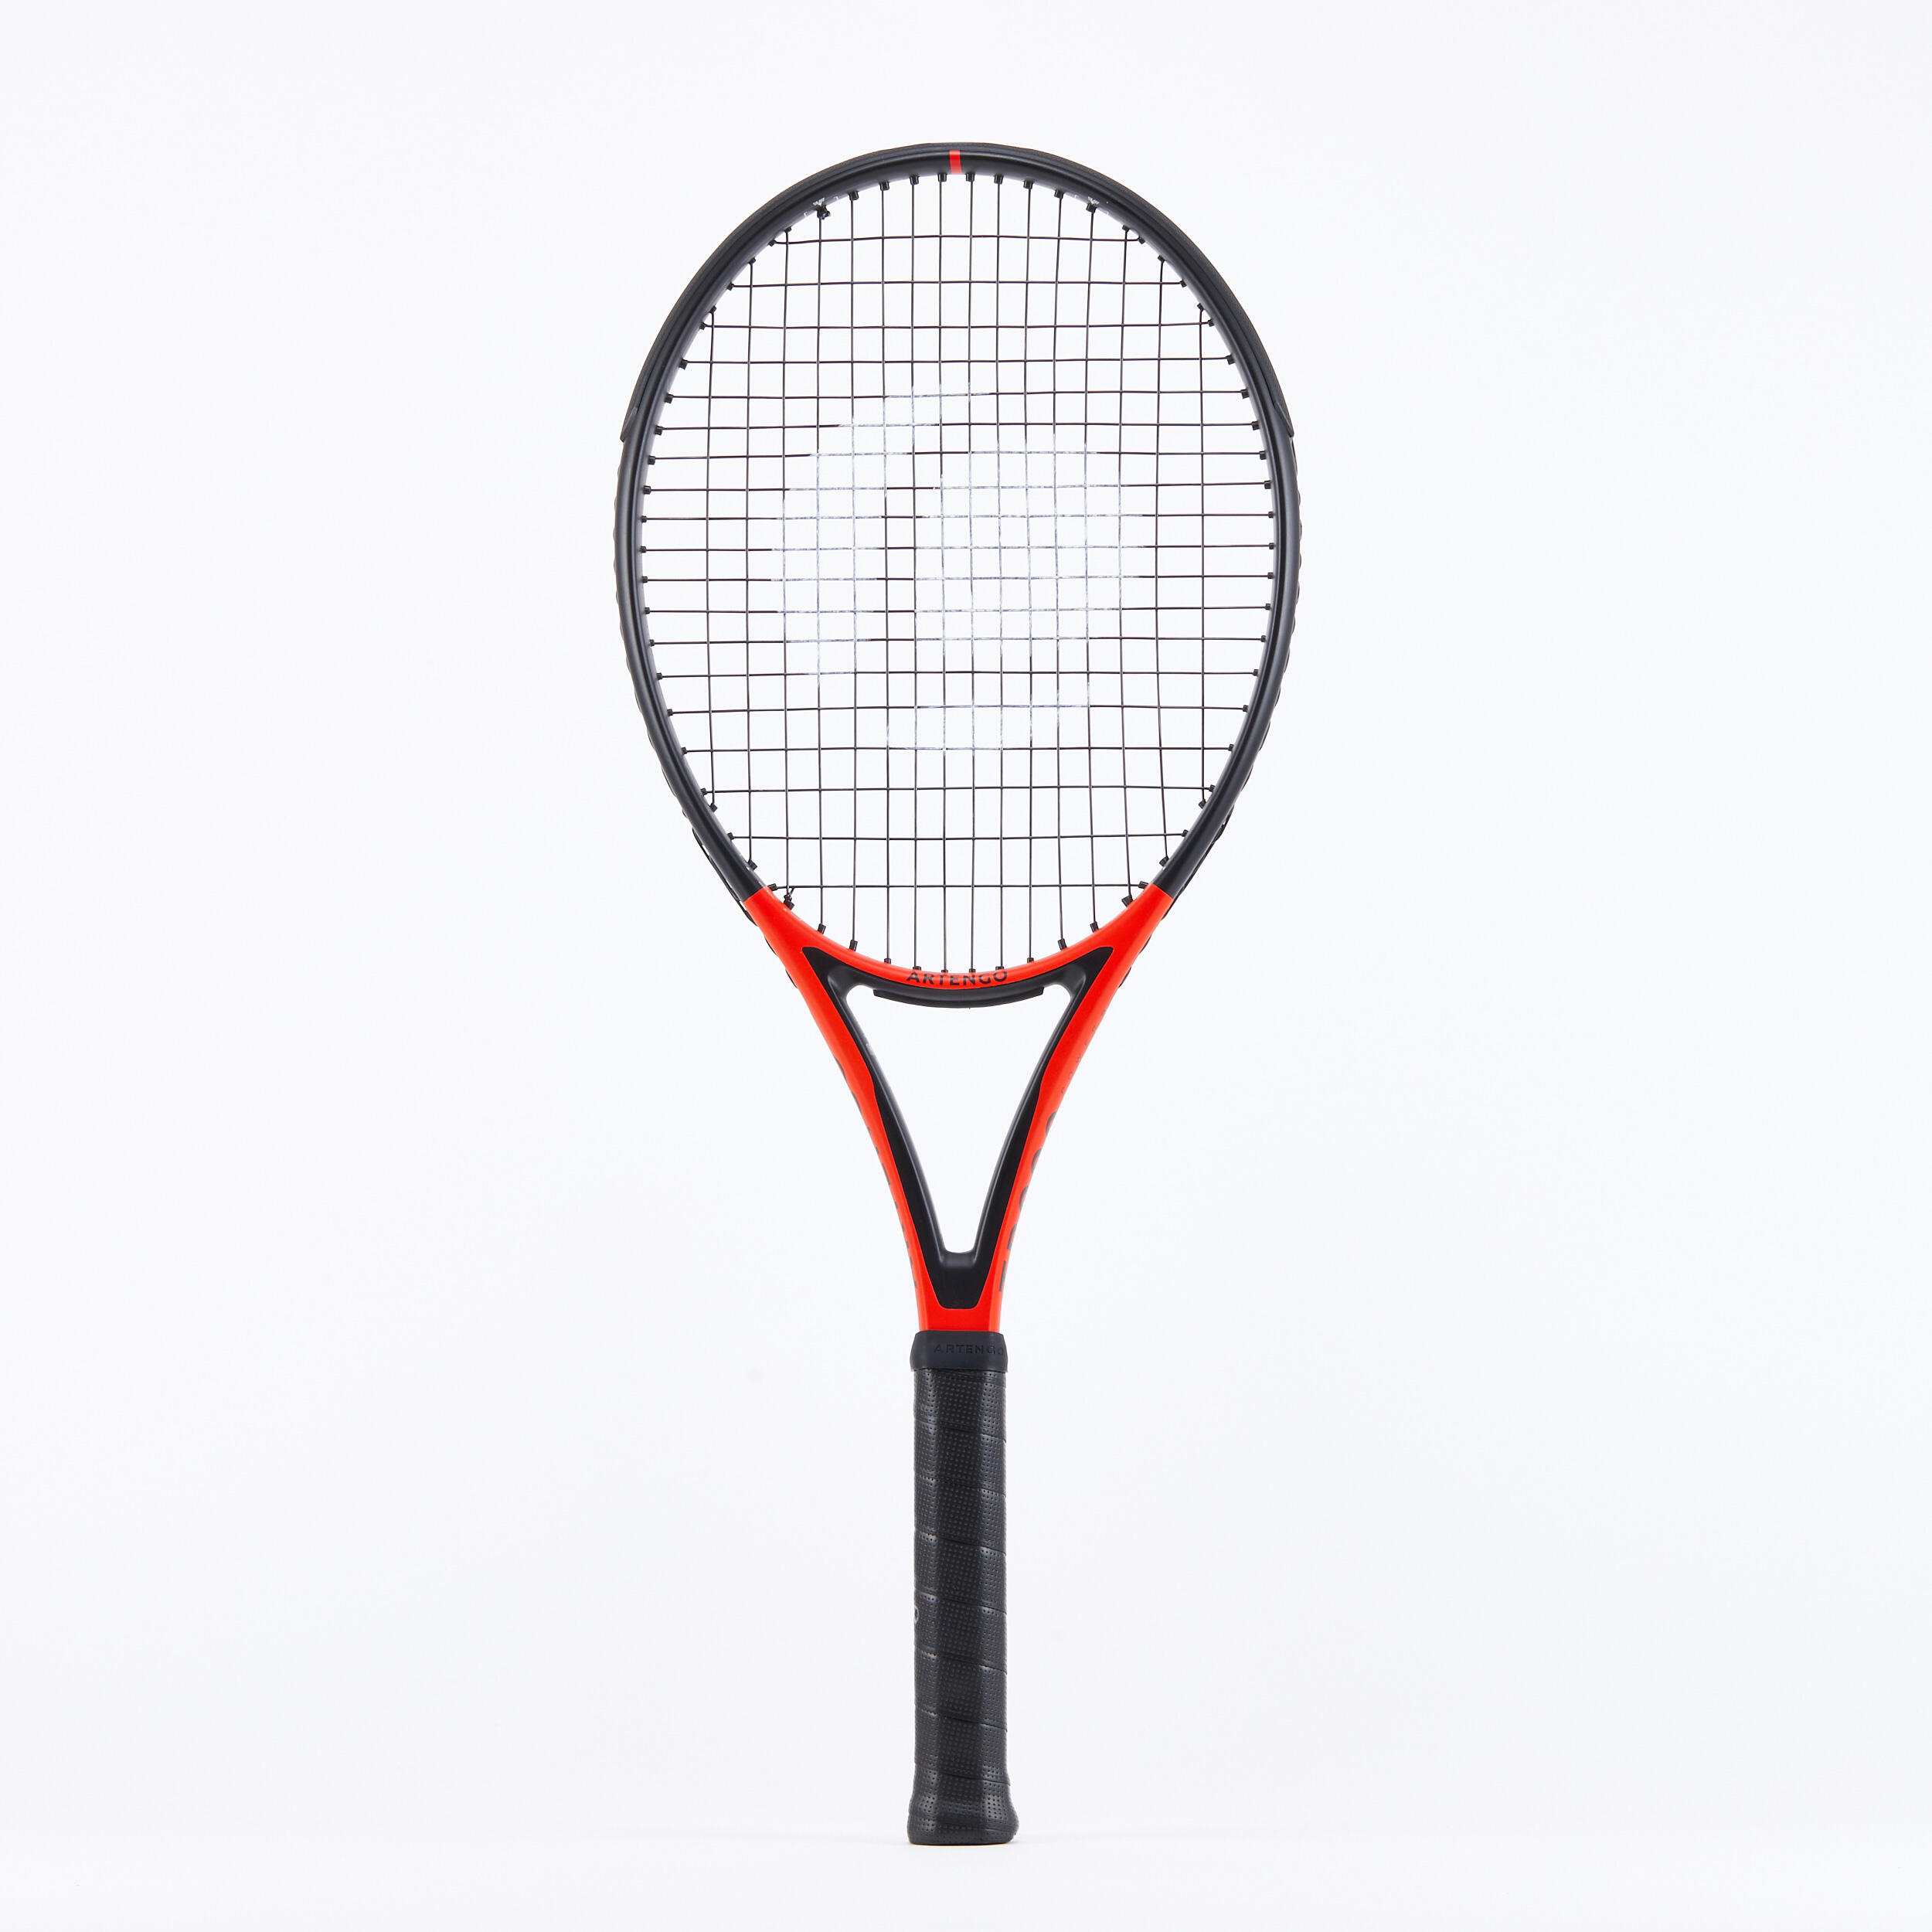 Tennisschläger Damen/Herren - TR990 Power Pro 300 gr besaitet rot/schwarz